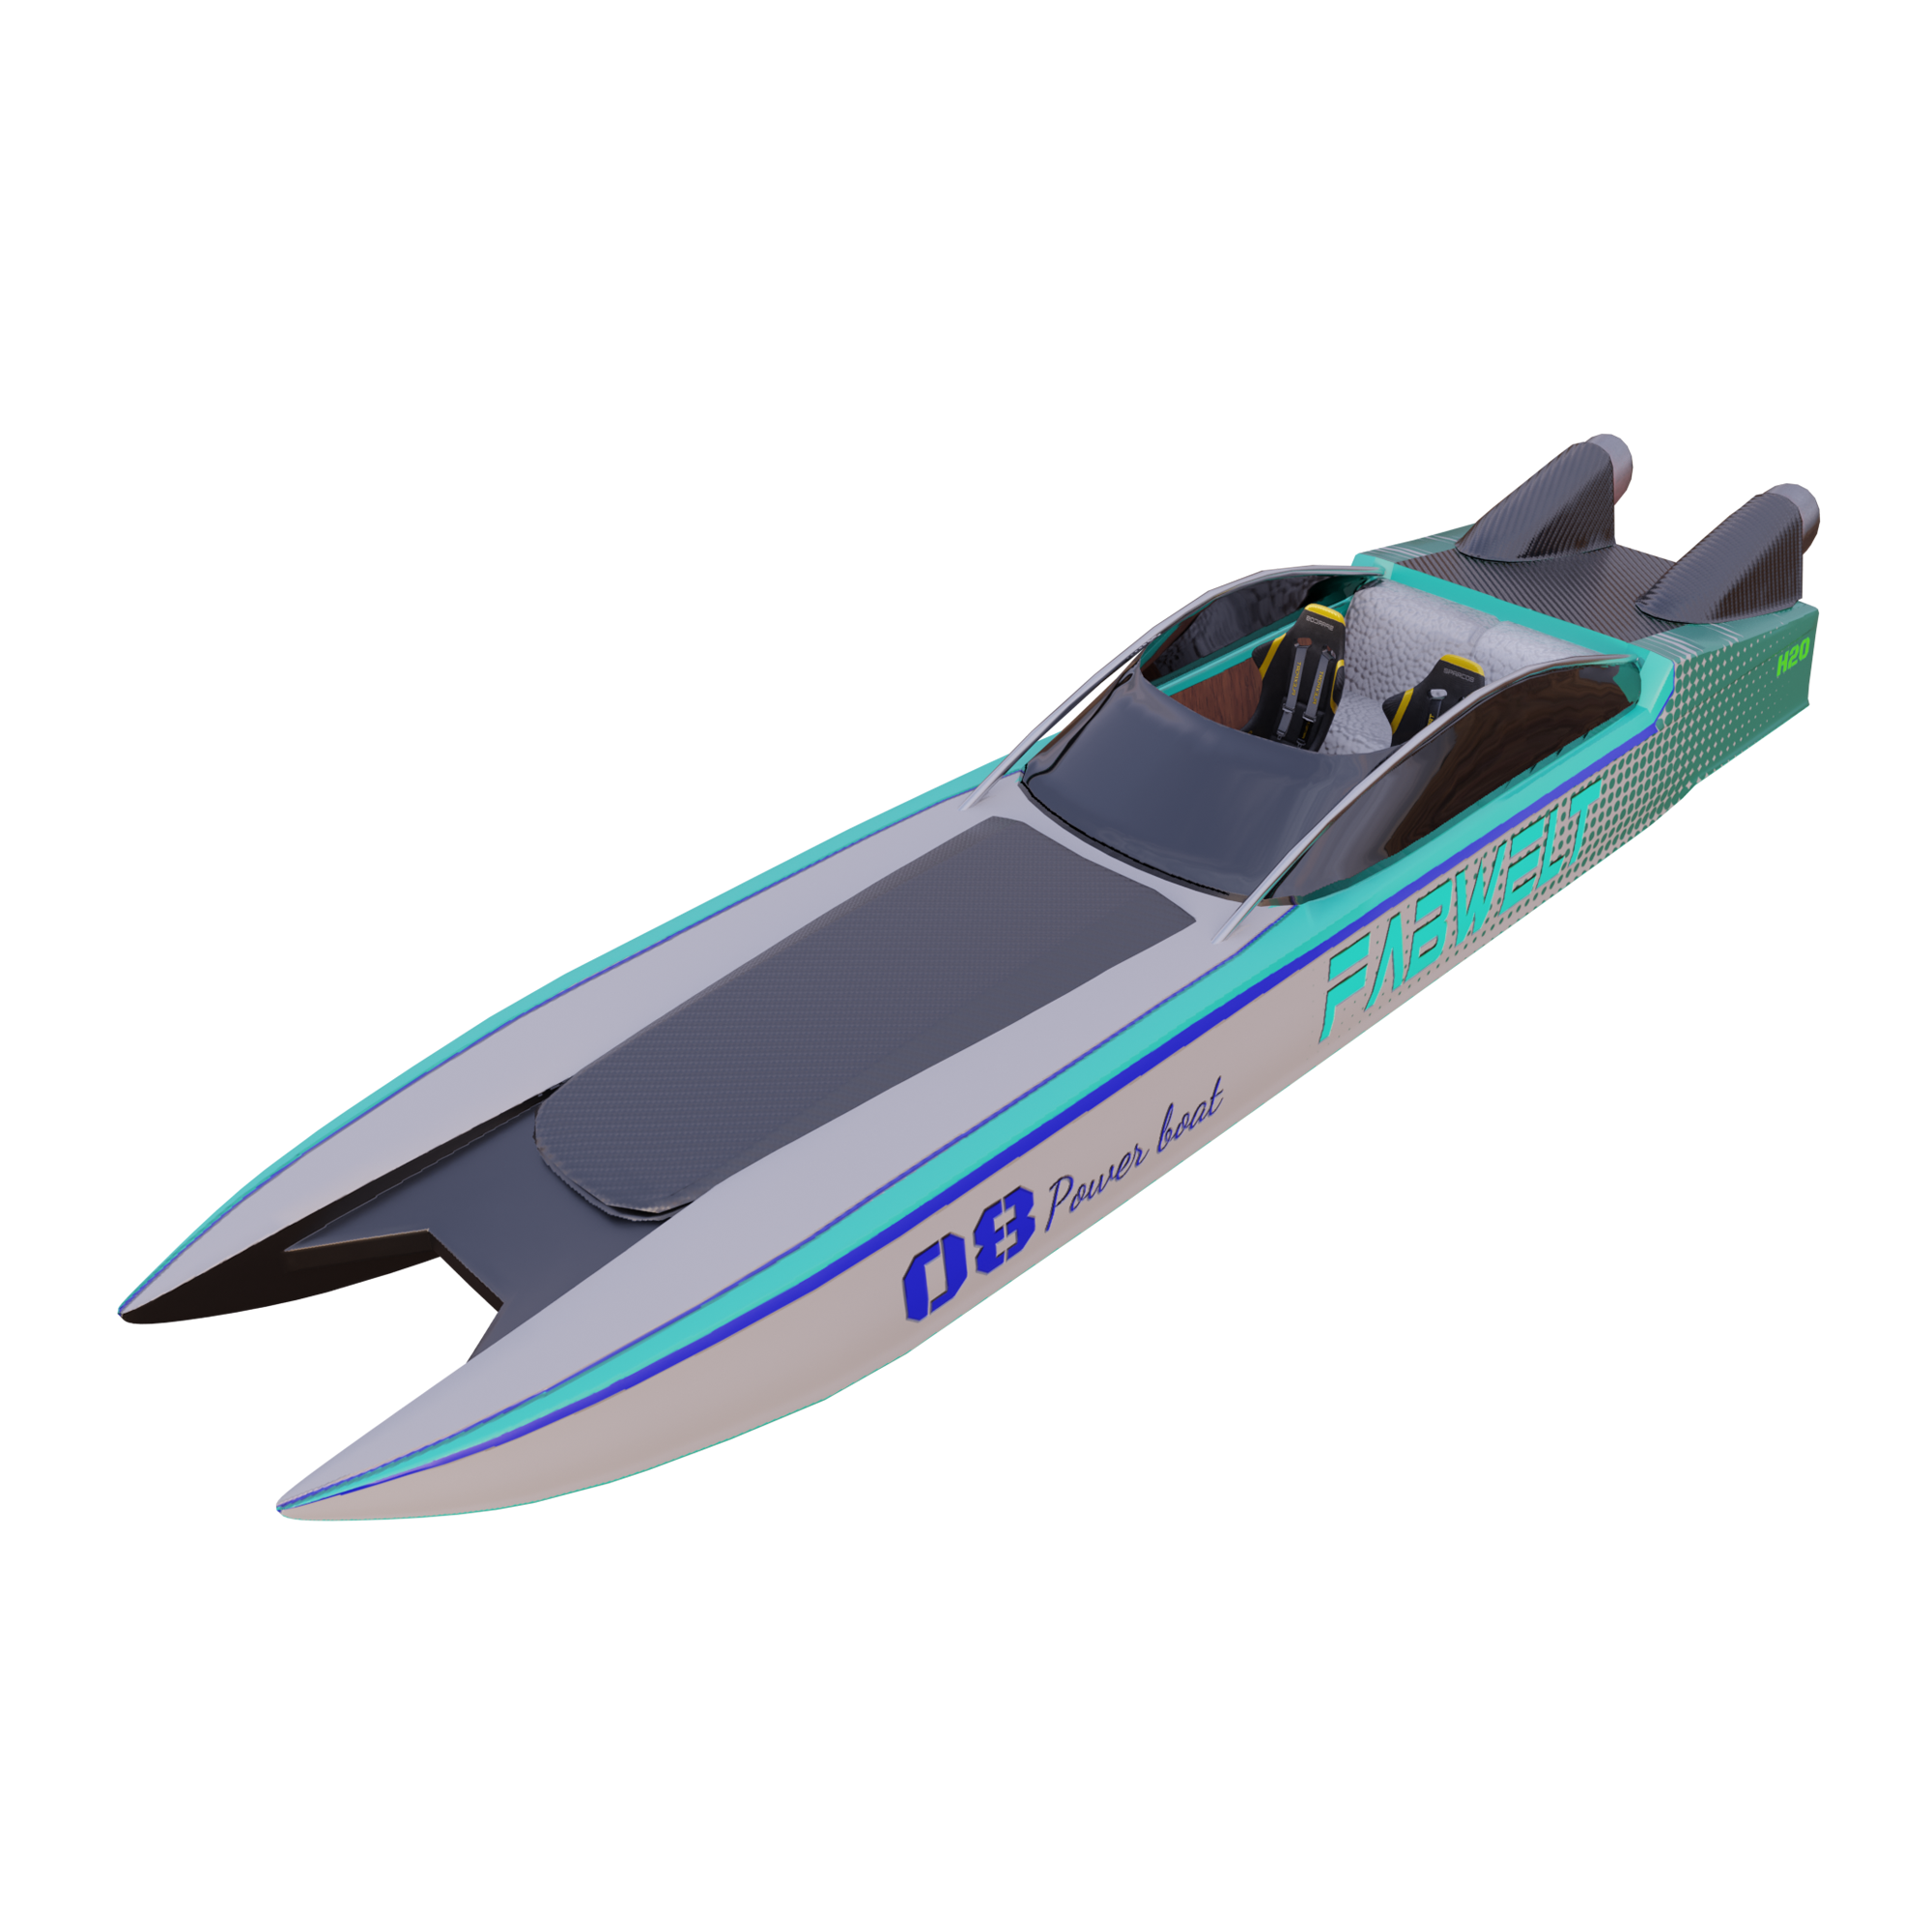 Renegade_Boat 1